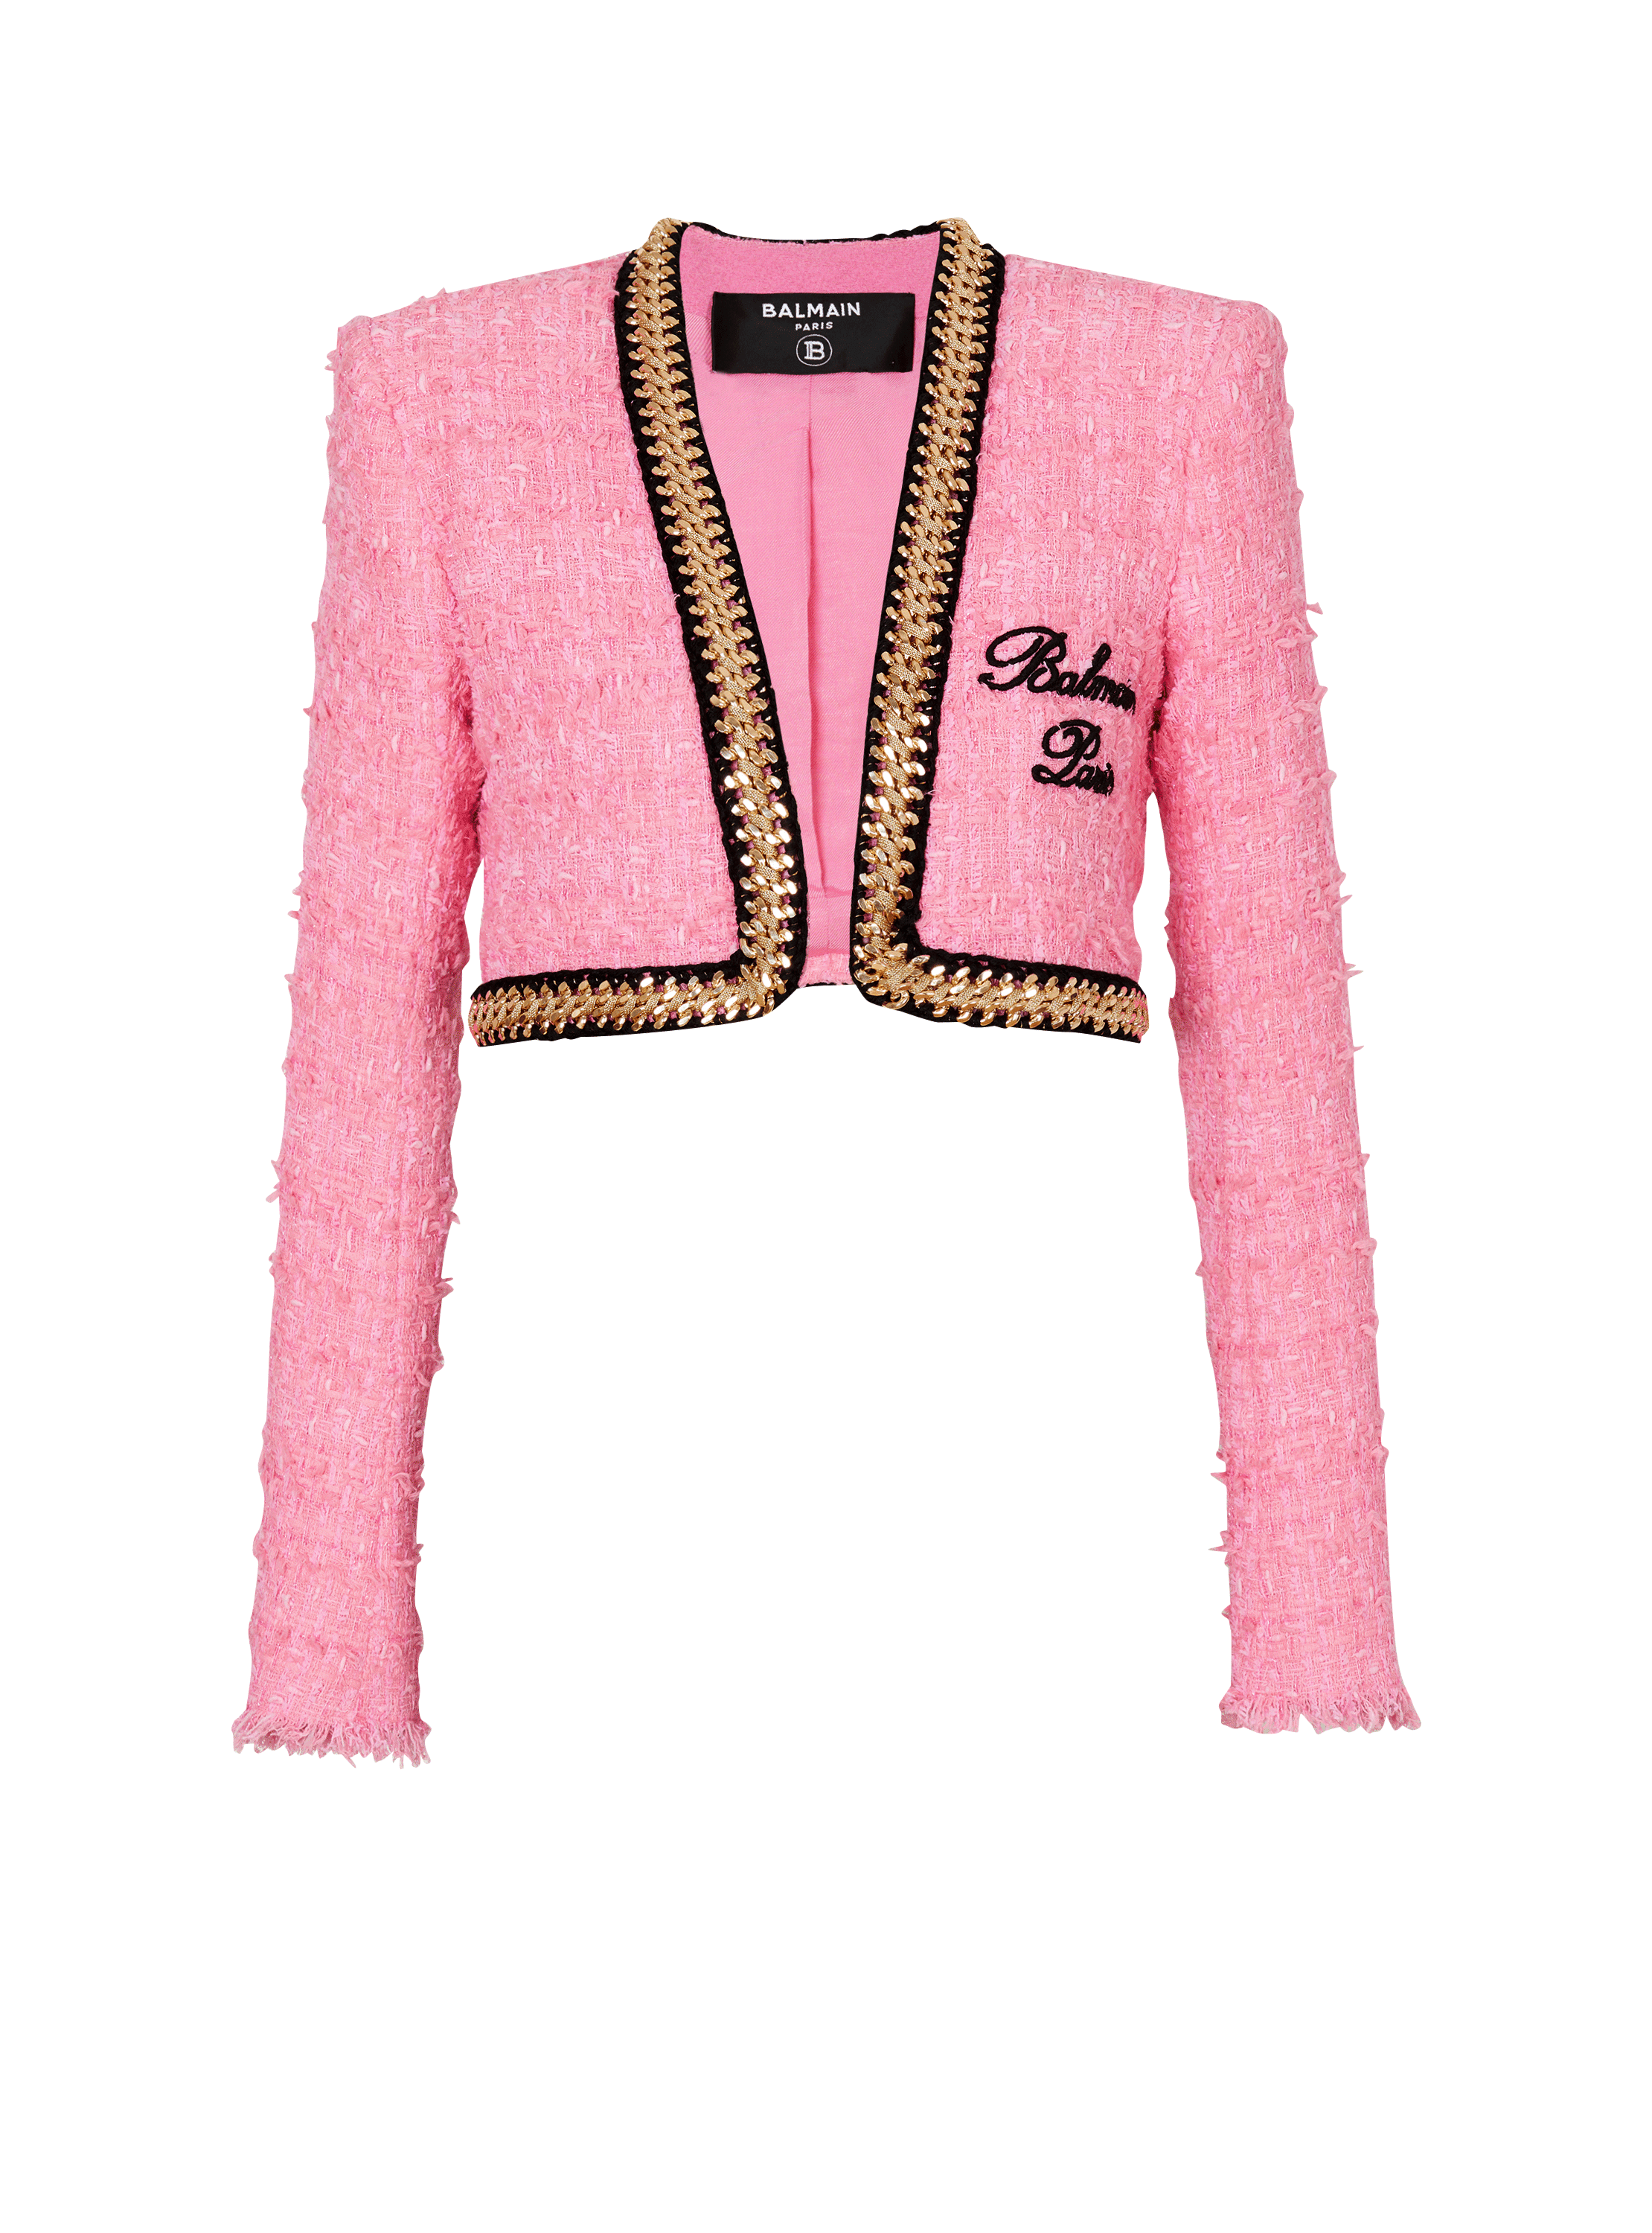 Balmain Signature tweed and chain jacket, pink, hi-res